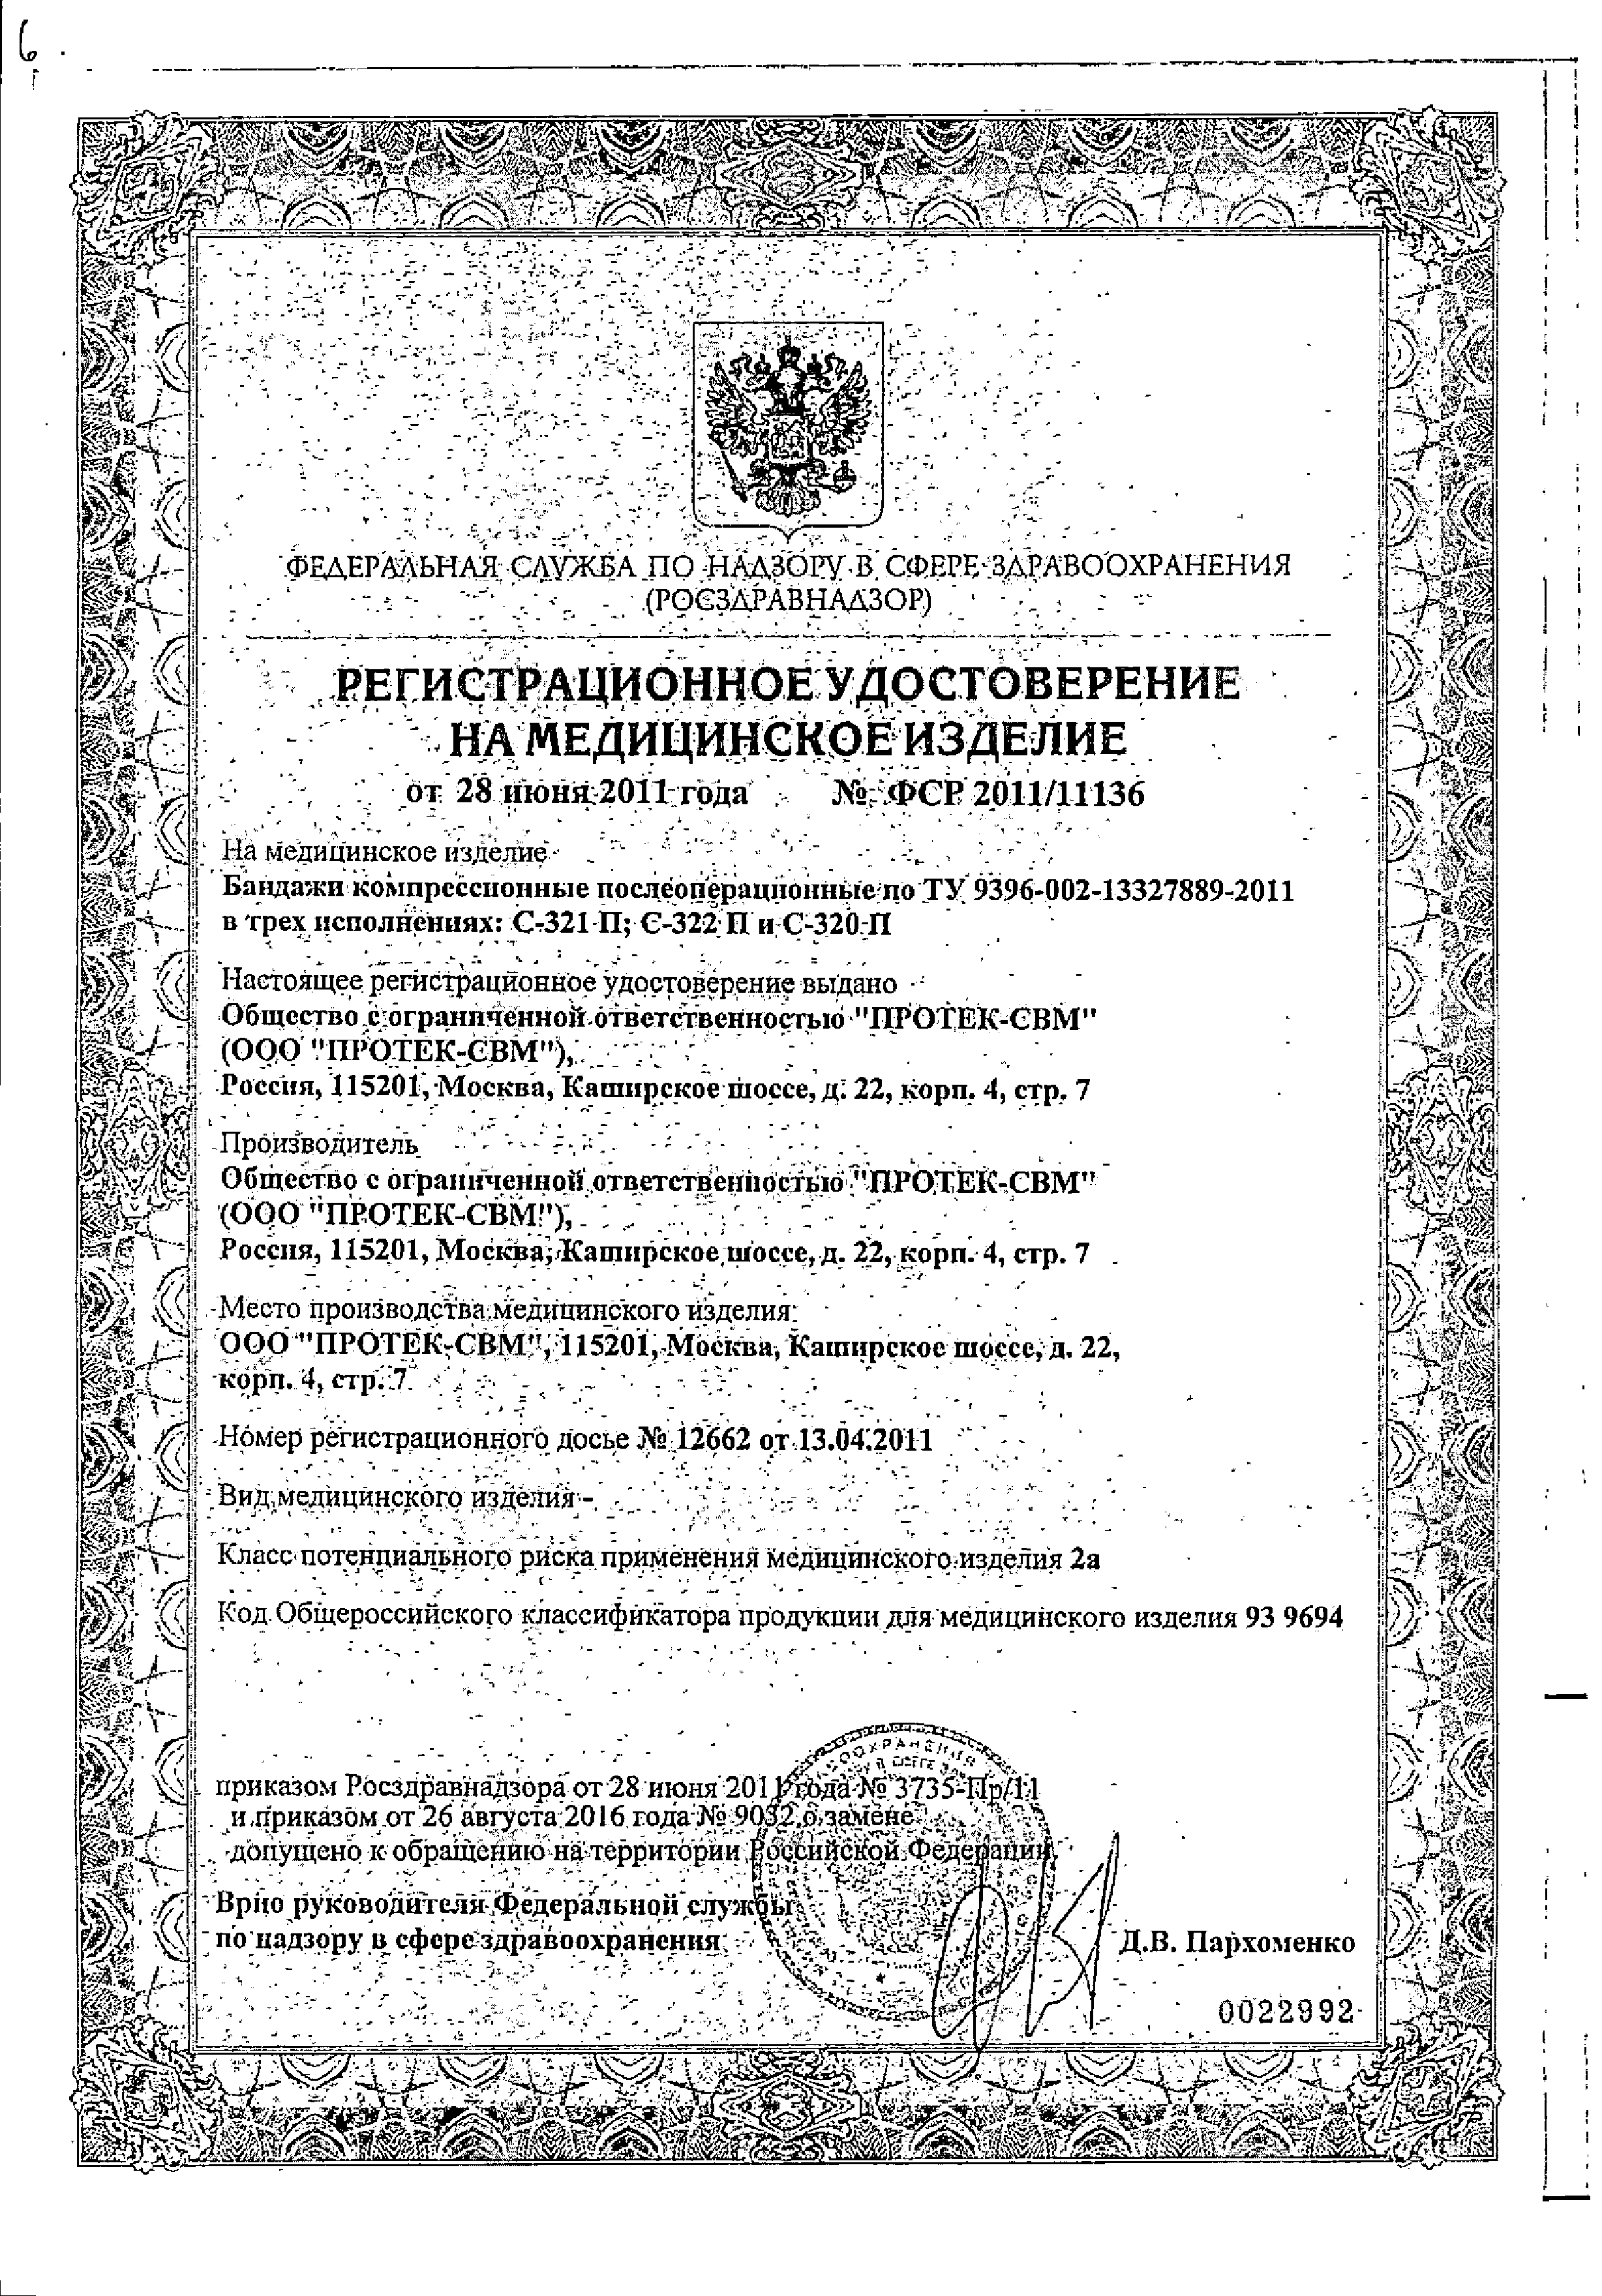 Бандаж Тонус БКП-Унга Супер сертификат